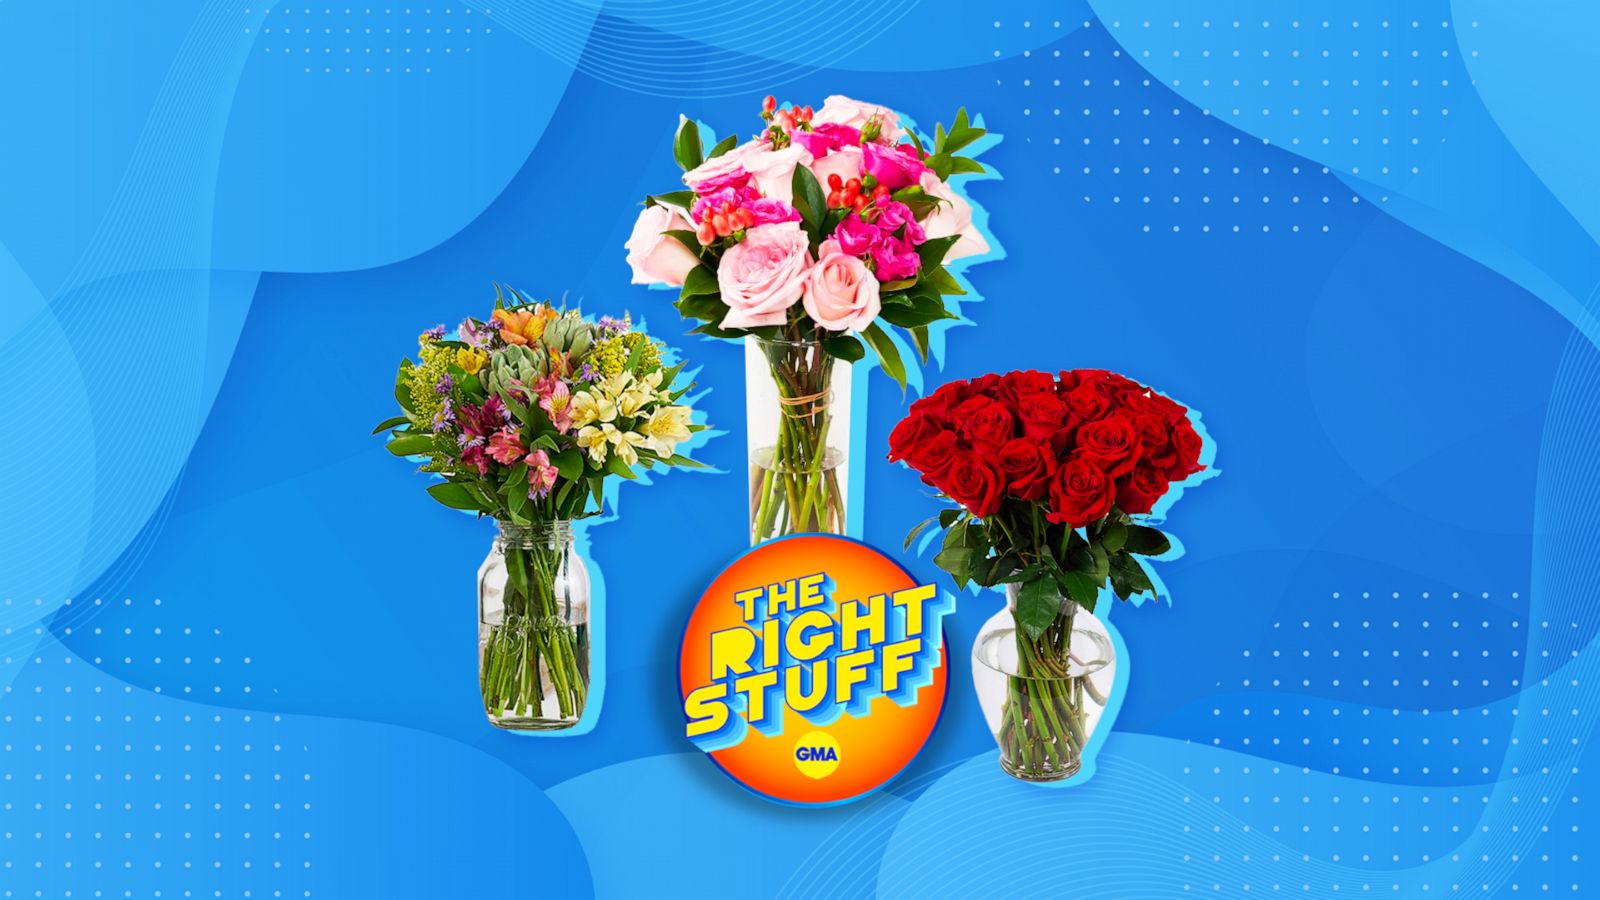 Bezwaar Kosten hartstochtelijk Last-minute gift ideas for Mother's Day: Exclusive UrbanStems flowers  discount and more - Good Morning America